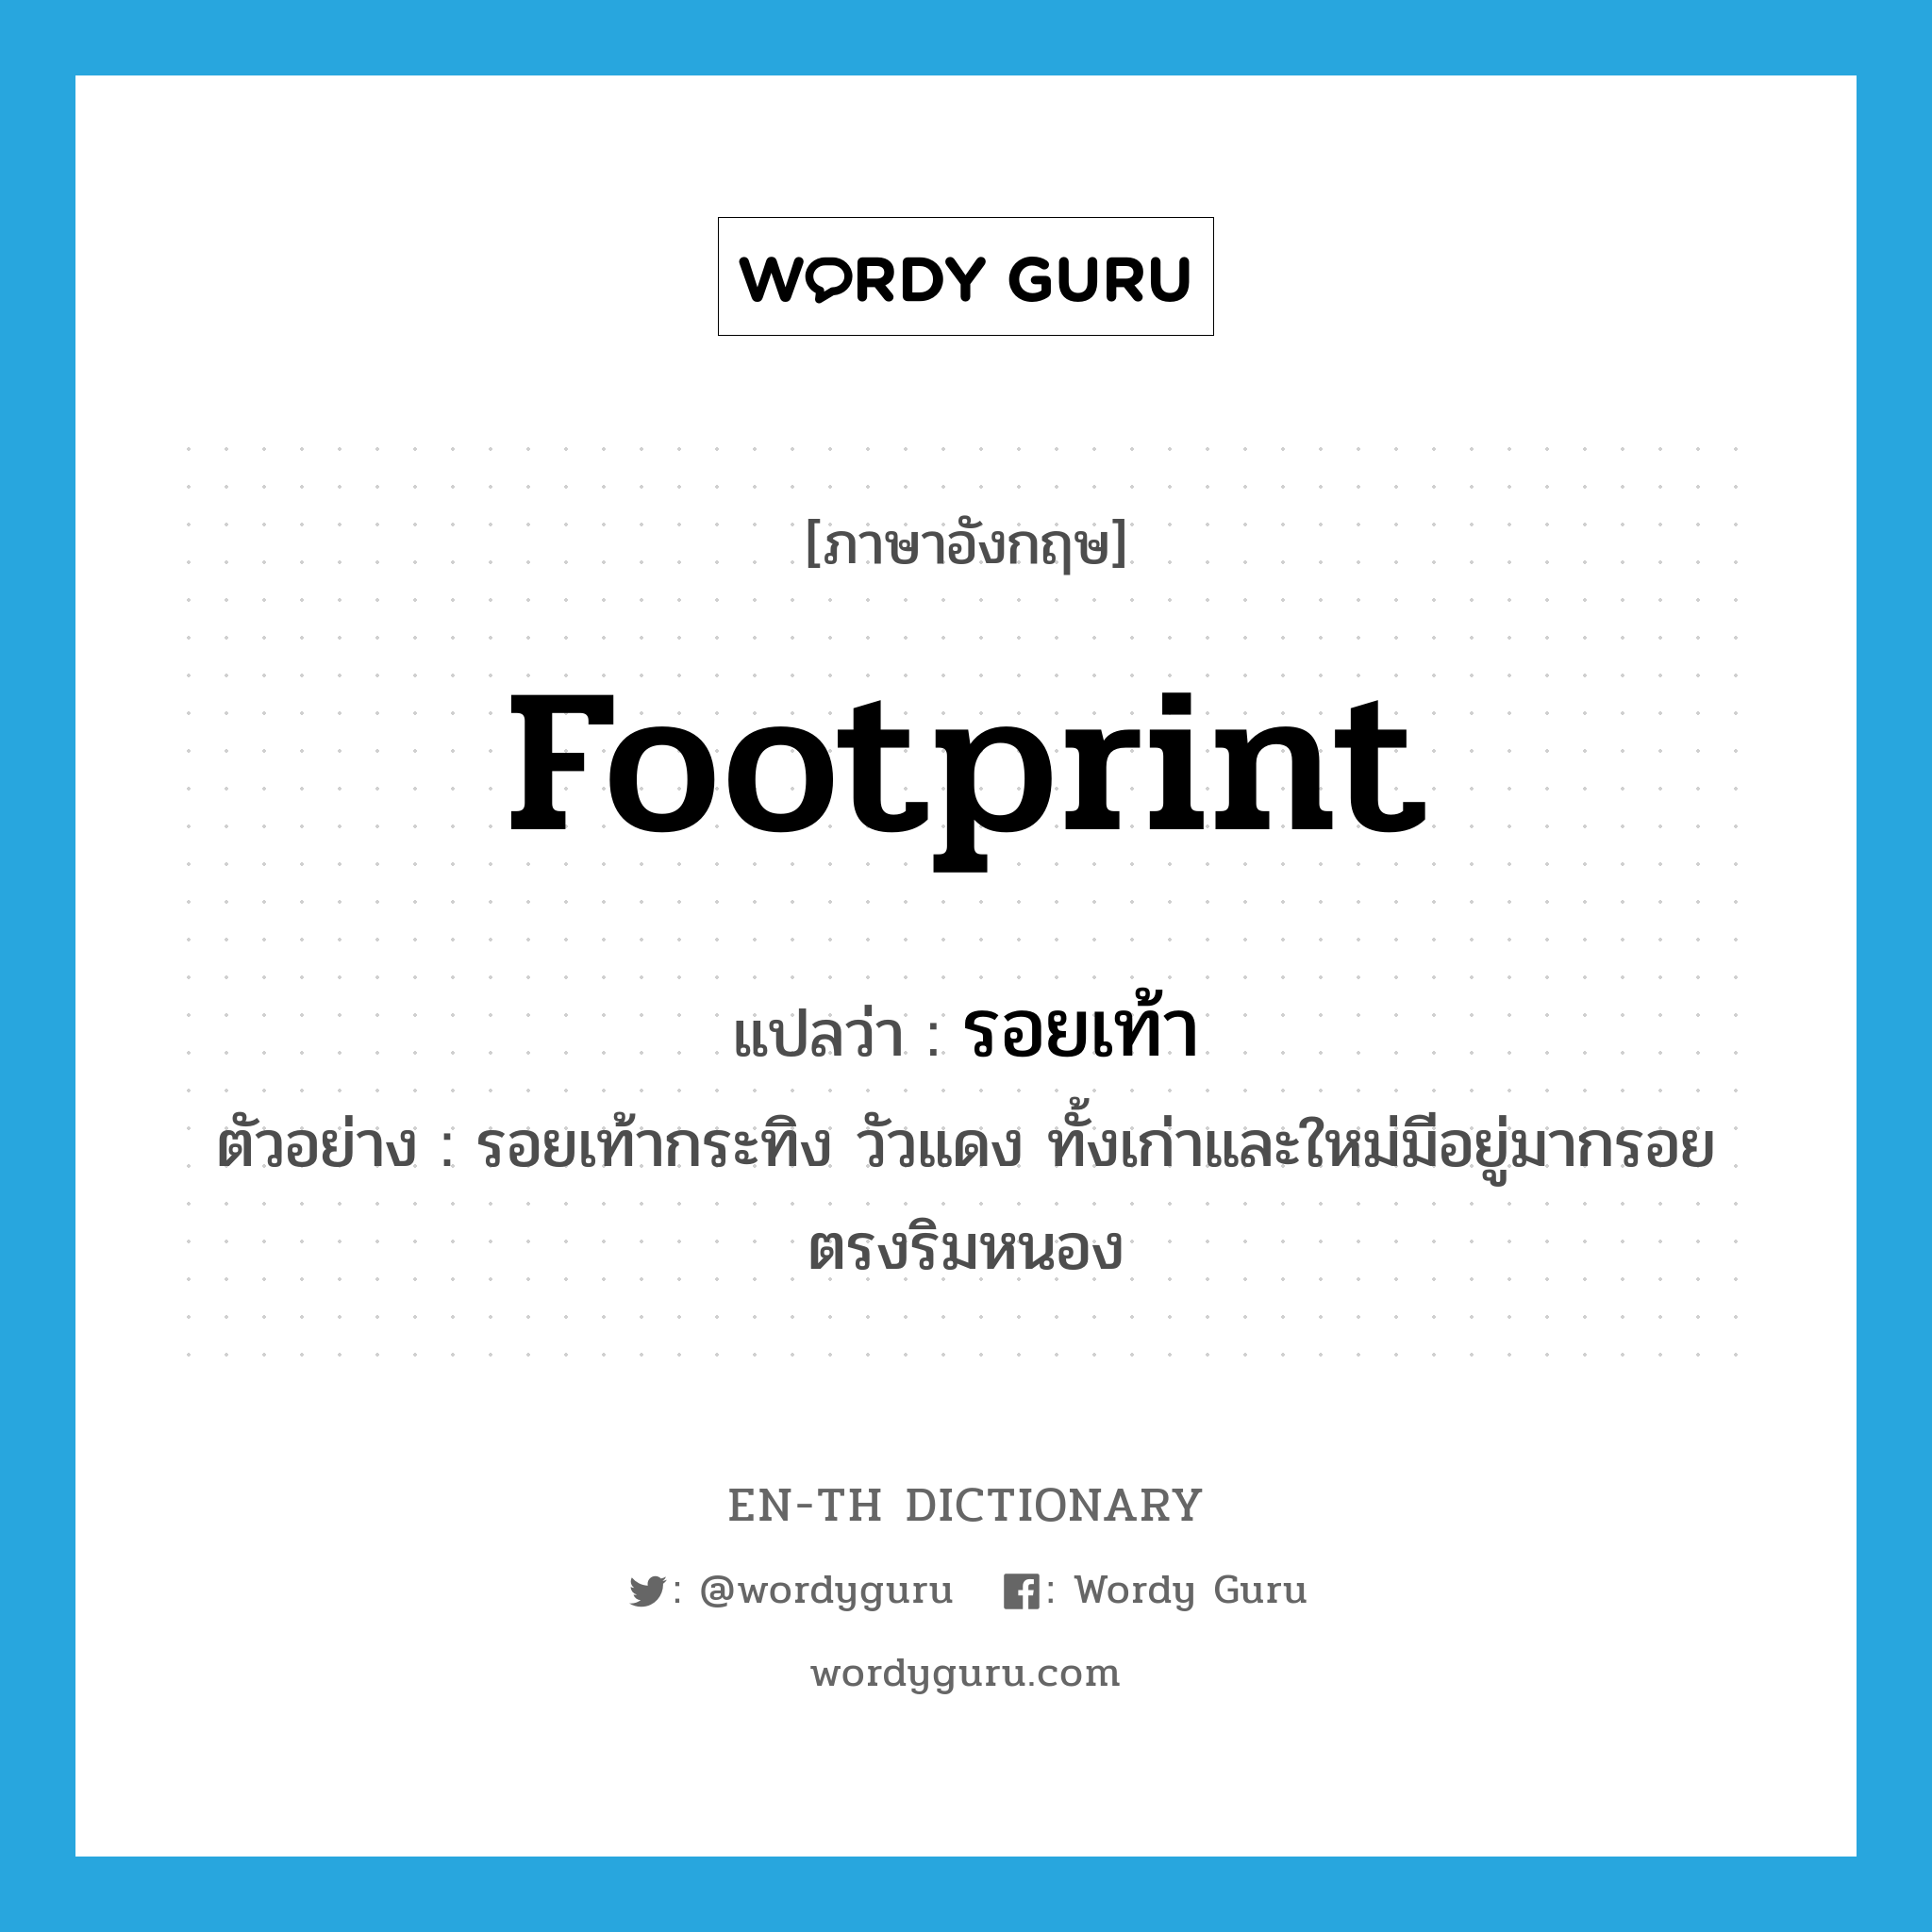 footprint แปลว่า?, คำศัพท์ภาษาอังกฤษ footprint แปลว่า รอยเท้า ประเภท N ตัวอย่าง รอยเท้ากระทิง วัวแดง ทั้งเก่าและใหม่มีอยู่มากรอยตรงริมหนอง หมวด N